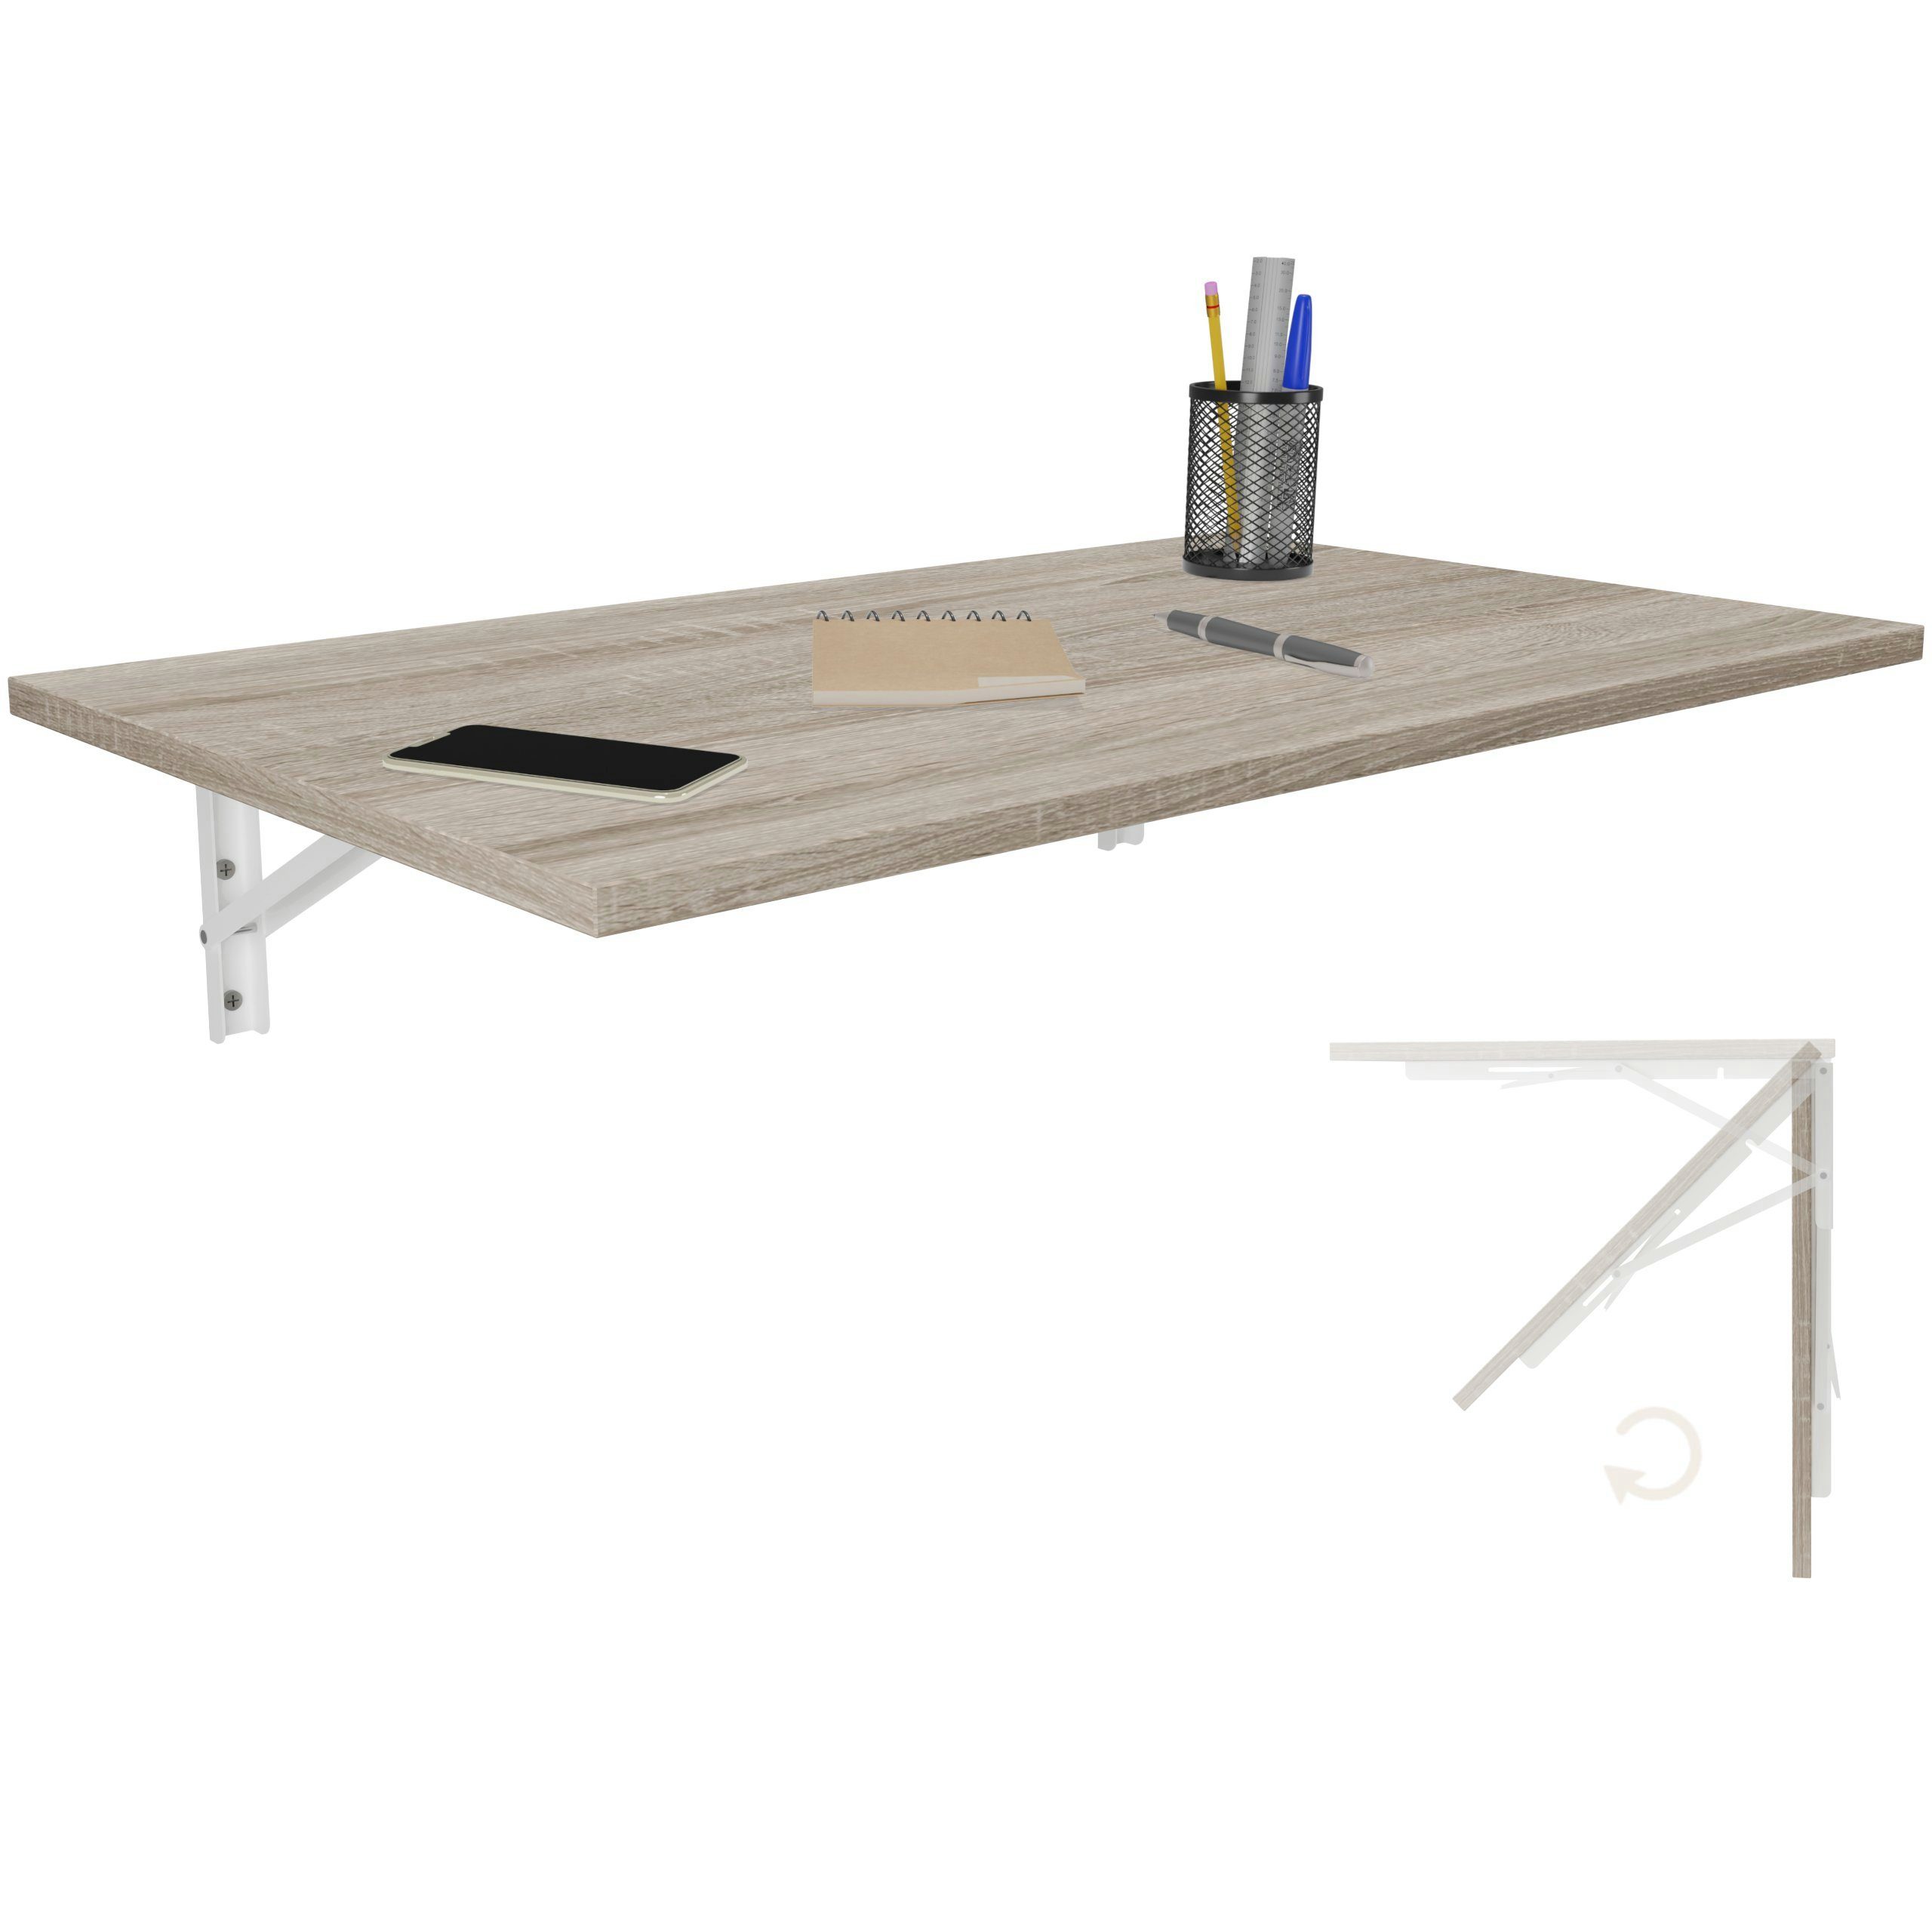 KDR Produktgestaltung Klapptisch 80x50 Wandklapptisch Esstisch Küchentisch Schreibtisch Wand Tisch, Sonoma Eiche